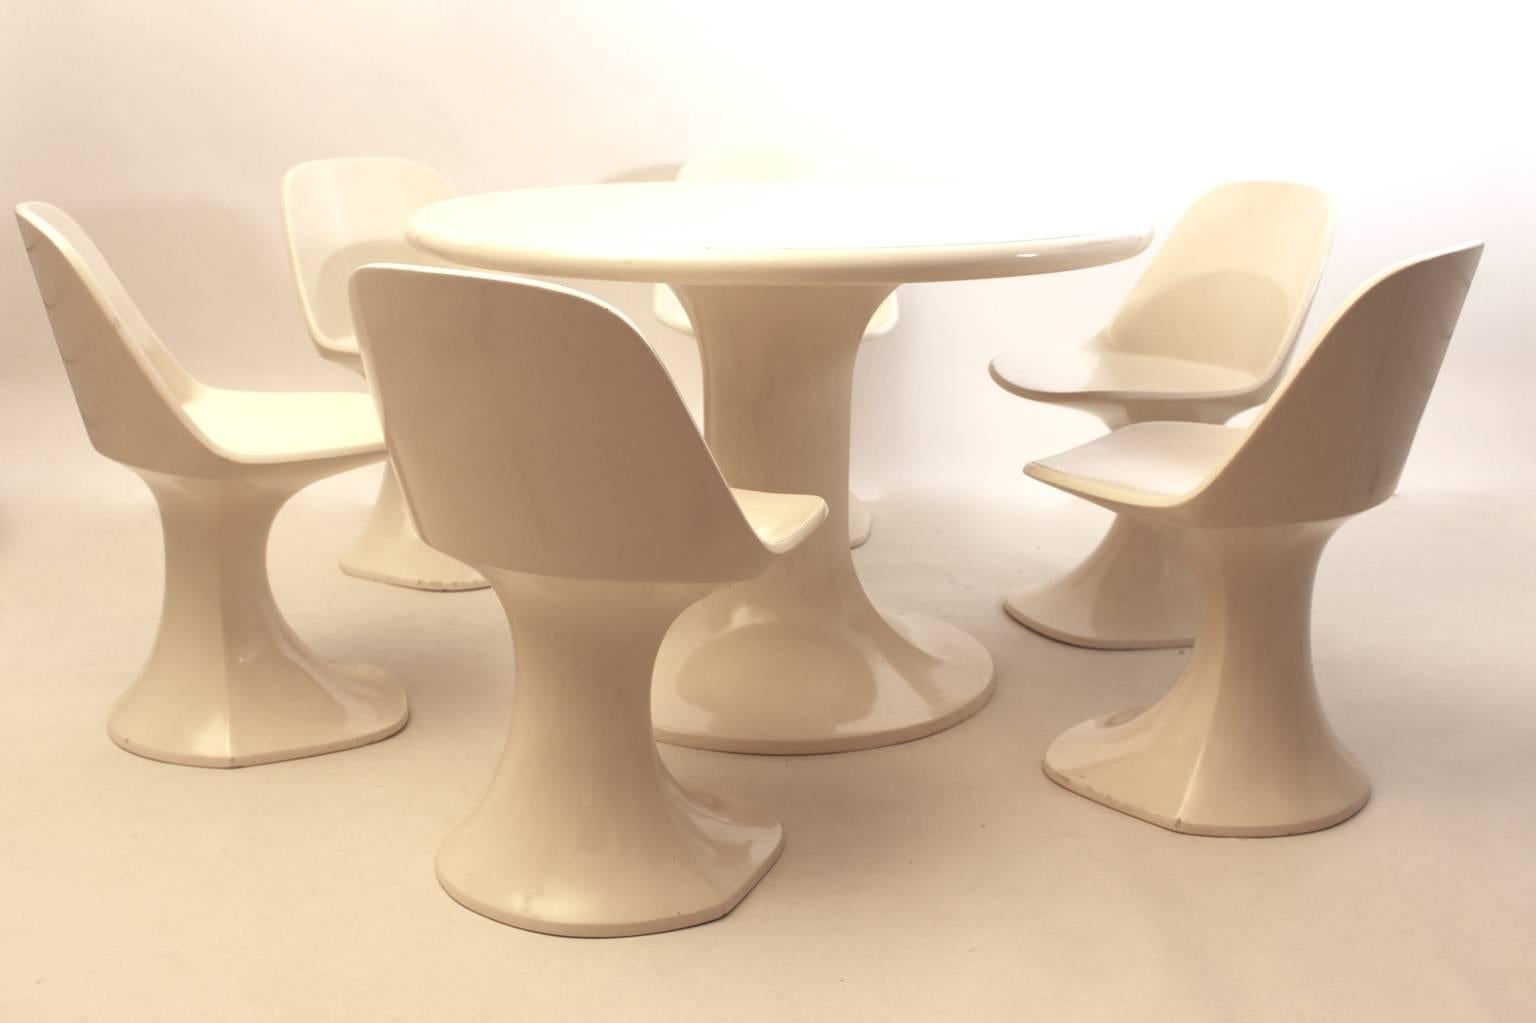 Space Age vintage Dining Room Set besteht aus einem kreisförmigen wie  esstisch und sechs passende skulpturale Esszimmerstühle aus weiß lackiertem Fiberglas  1970er Jahre von HT-Collection, Finnland ( Huonekaluuluote )
Alle sechs Esszimmerstühle und